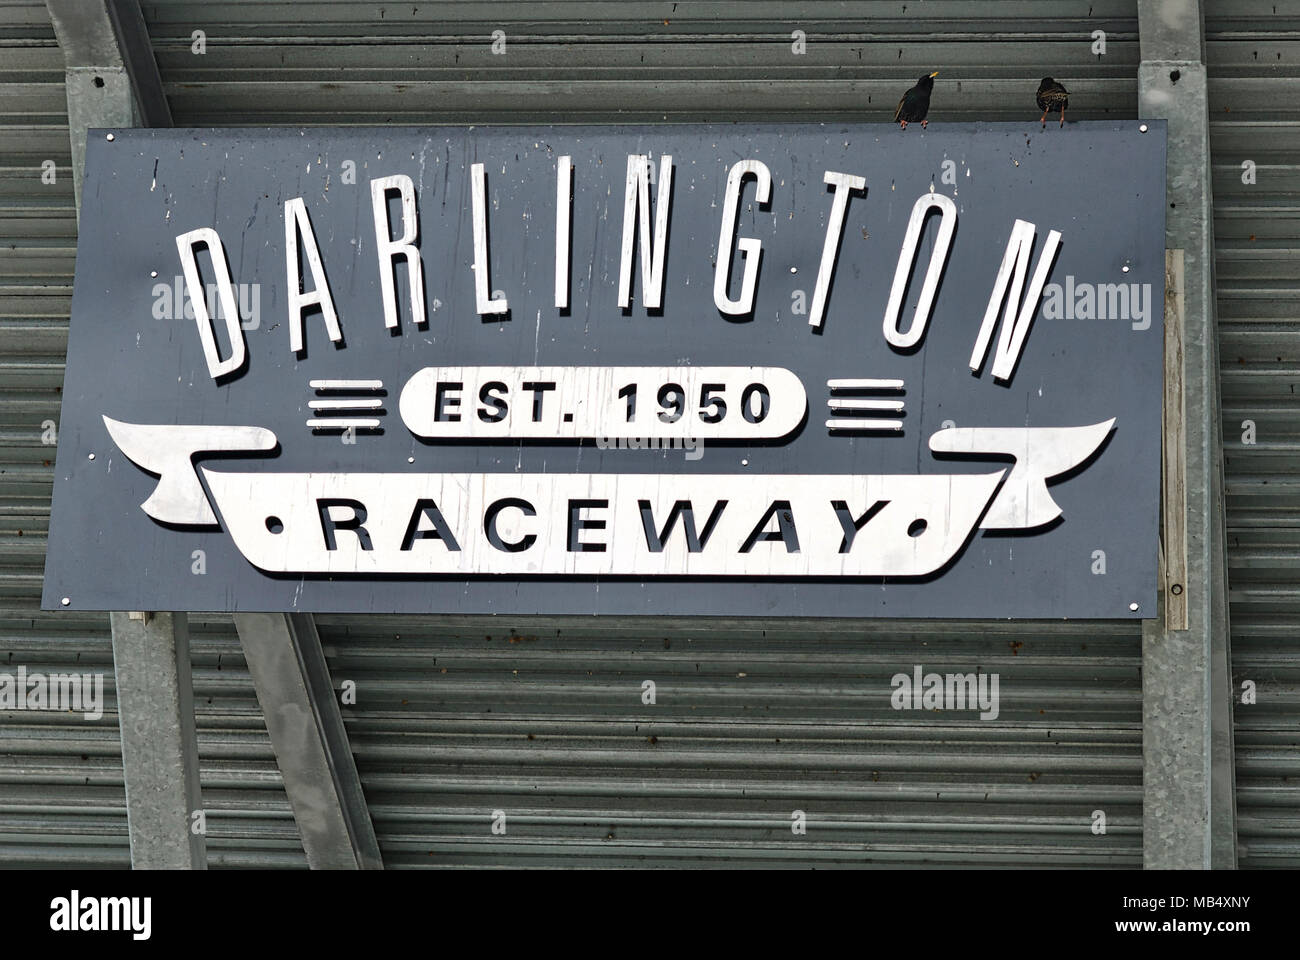 Darlington, South Carolina, USA - 25. März 2018: Close-up Zeichen bei Darlington Raceway, der älteste original asphaltierten Rennstrecke in der NASCAR. Stockfoto